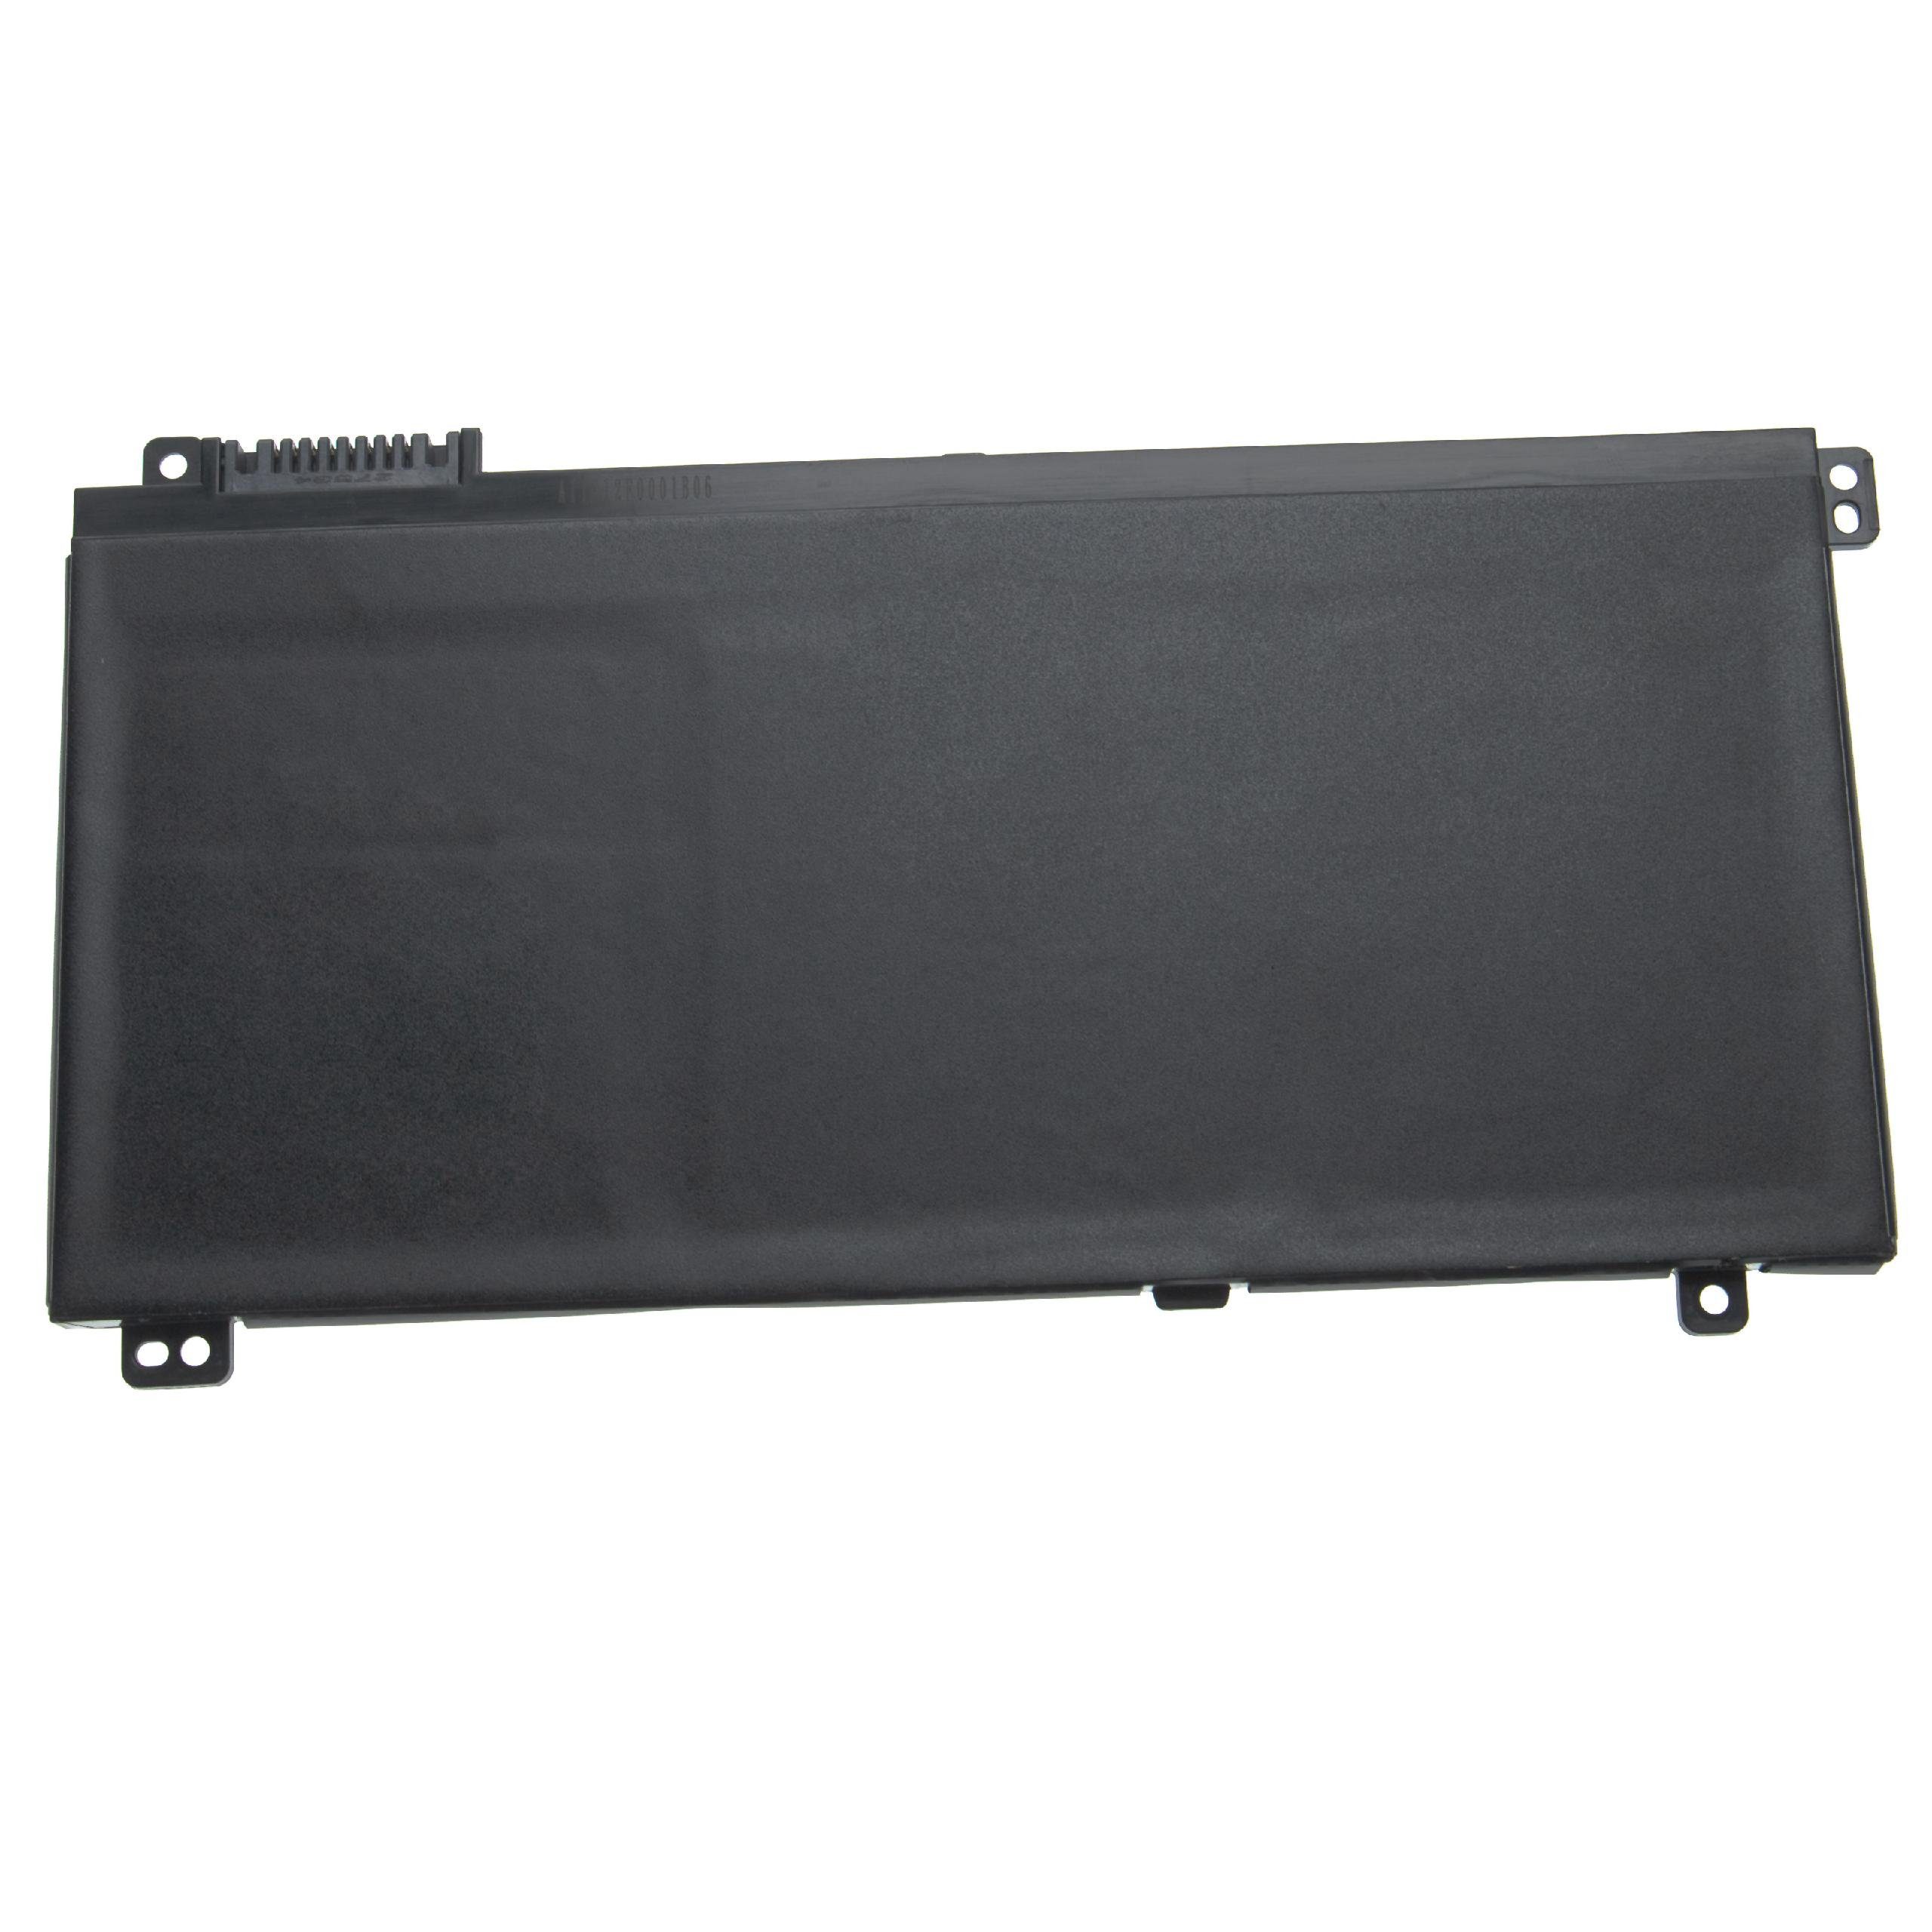 G1 11 G3, Laptop-Akku Li-Polymer ProBook x360 kompatibel HP mit 4150 vhbw mAh (11,4 x360 V) 440